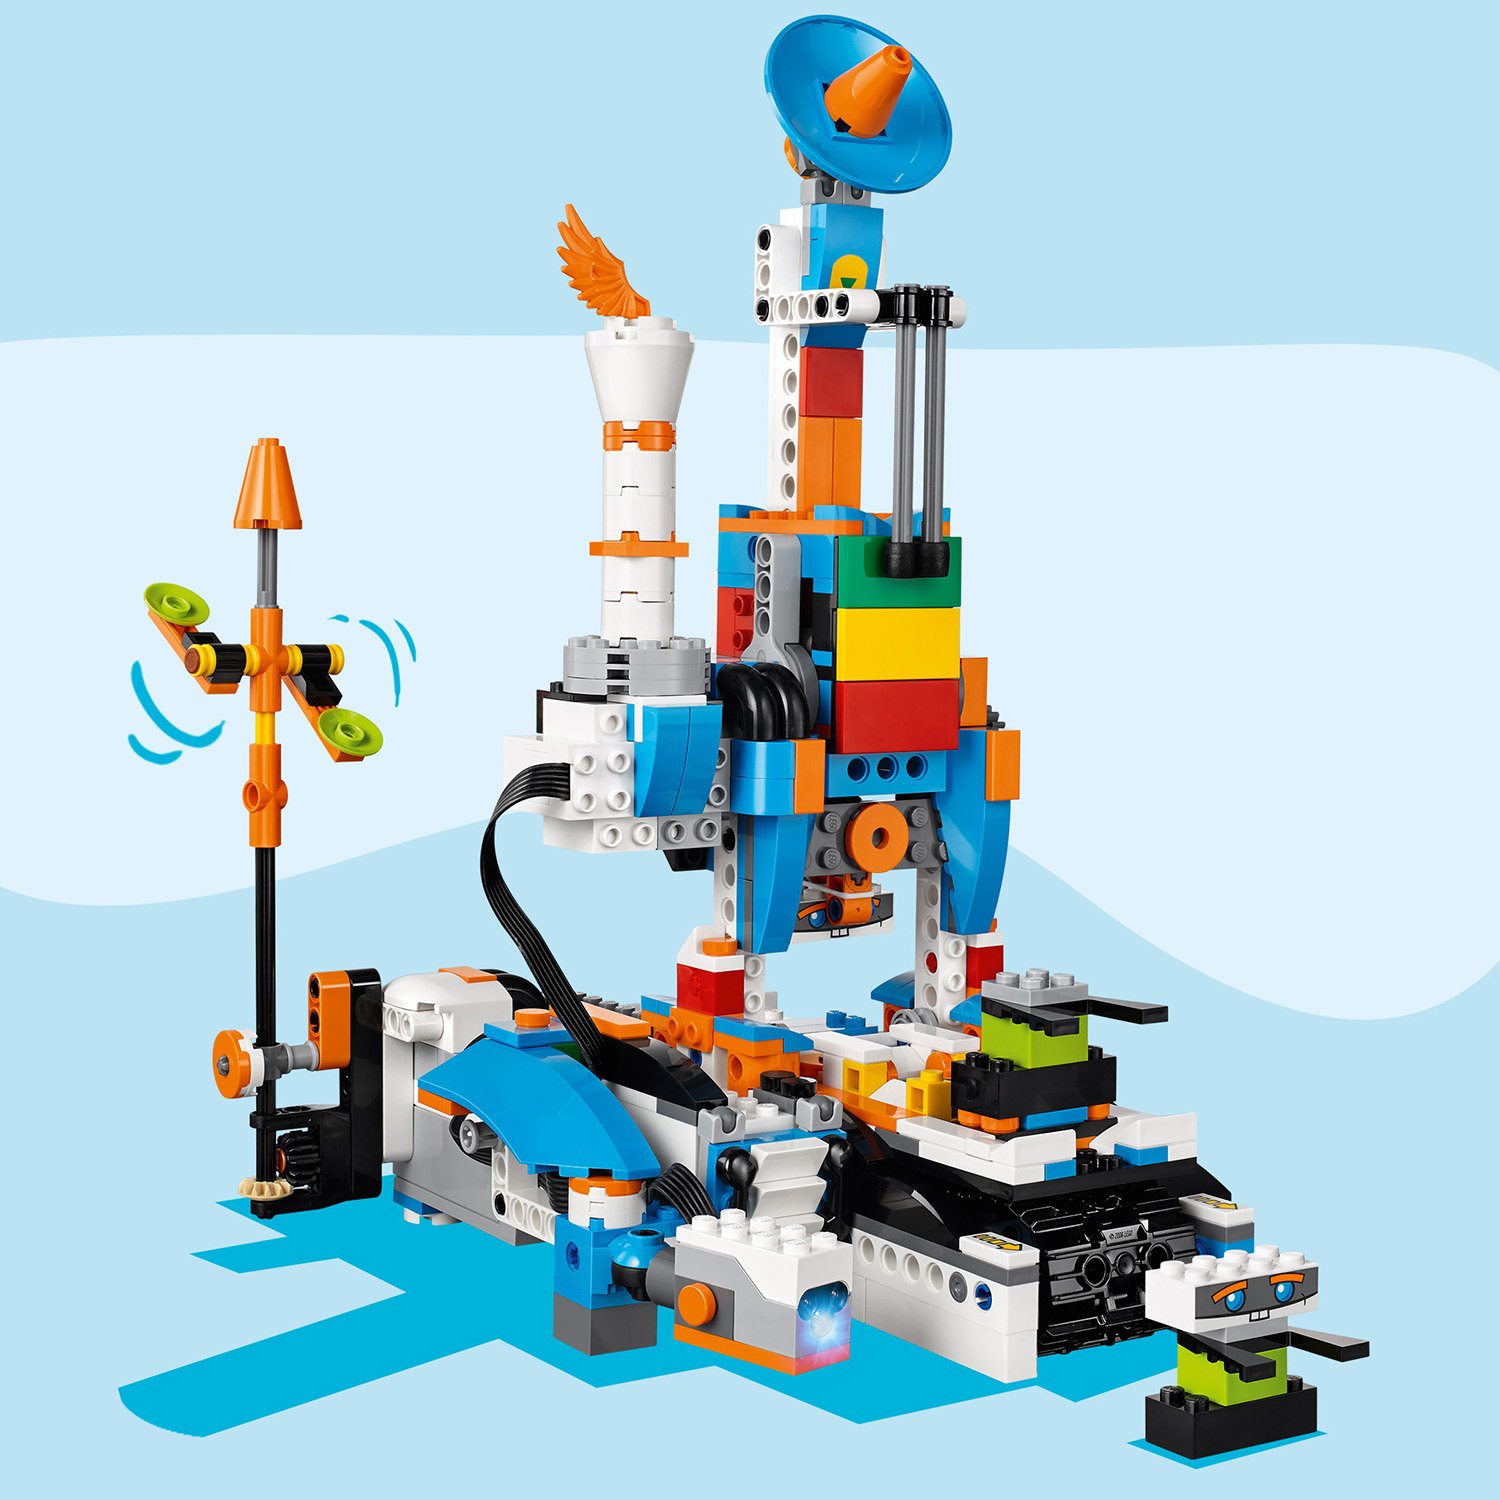 Конструктор Lego Boost - Набор для конструирования и программирования  